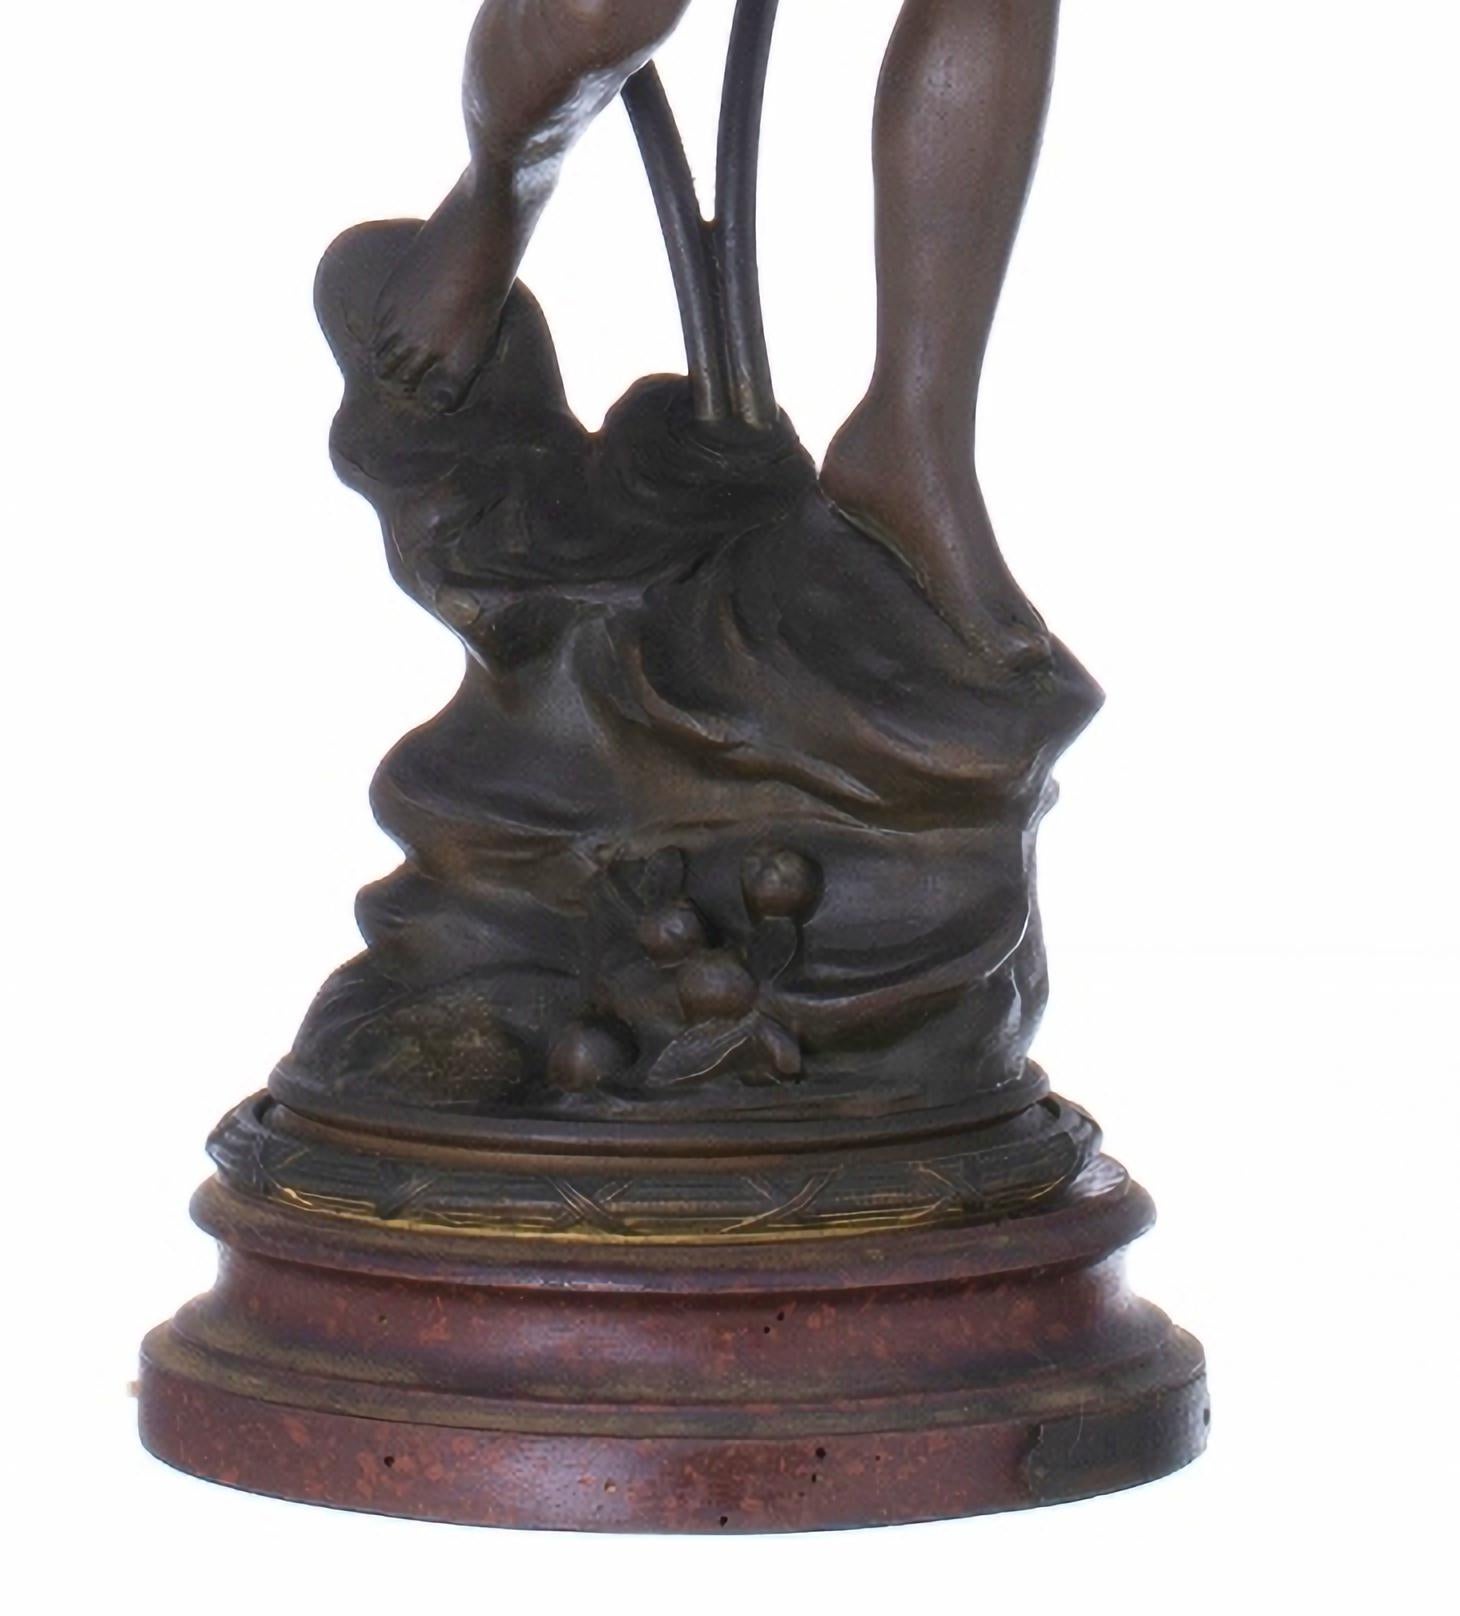 Emile François Rousseau (1853- ?)

Lampe de table à deux lumières en bronze d'art avec deux tulipes en verre.
Monté sur une base en bois.
Signé.
petits défauts
Dimensions : hauteur : (total) 78 cm.
Bonnes conditions.